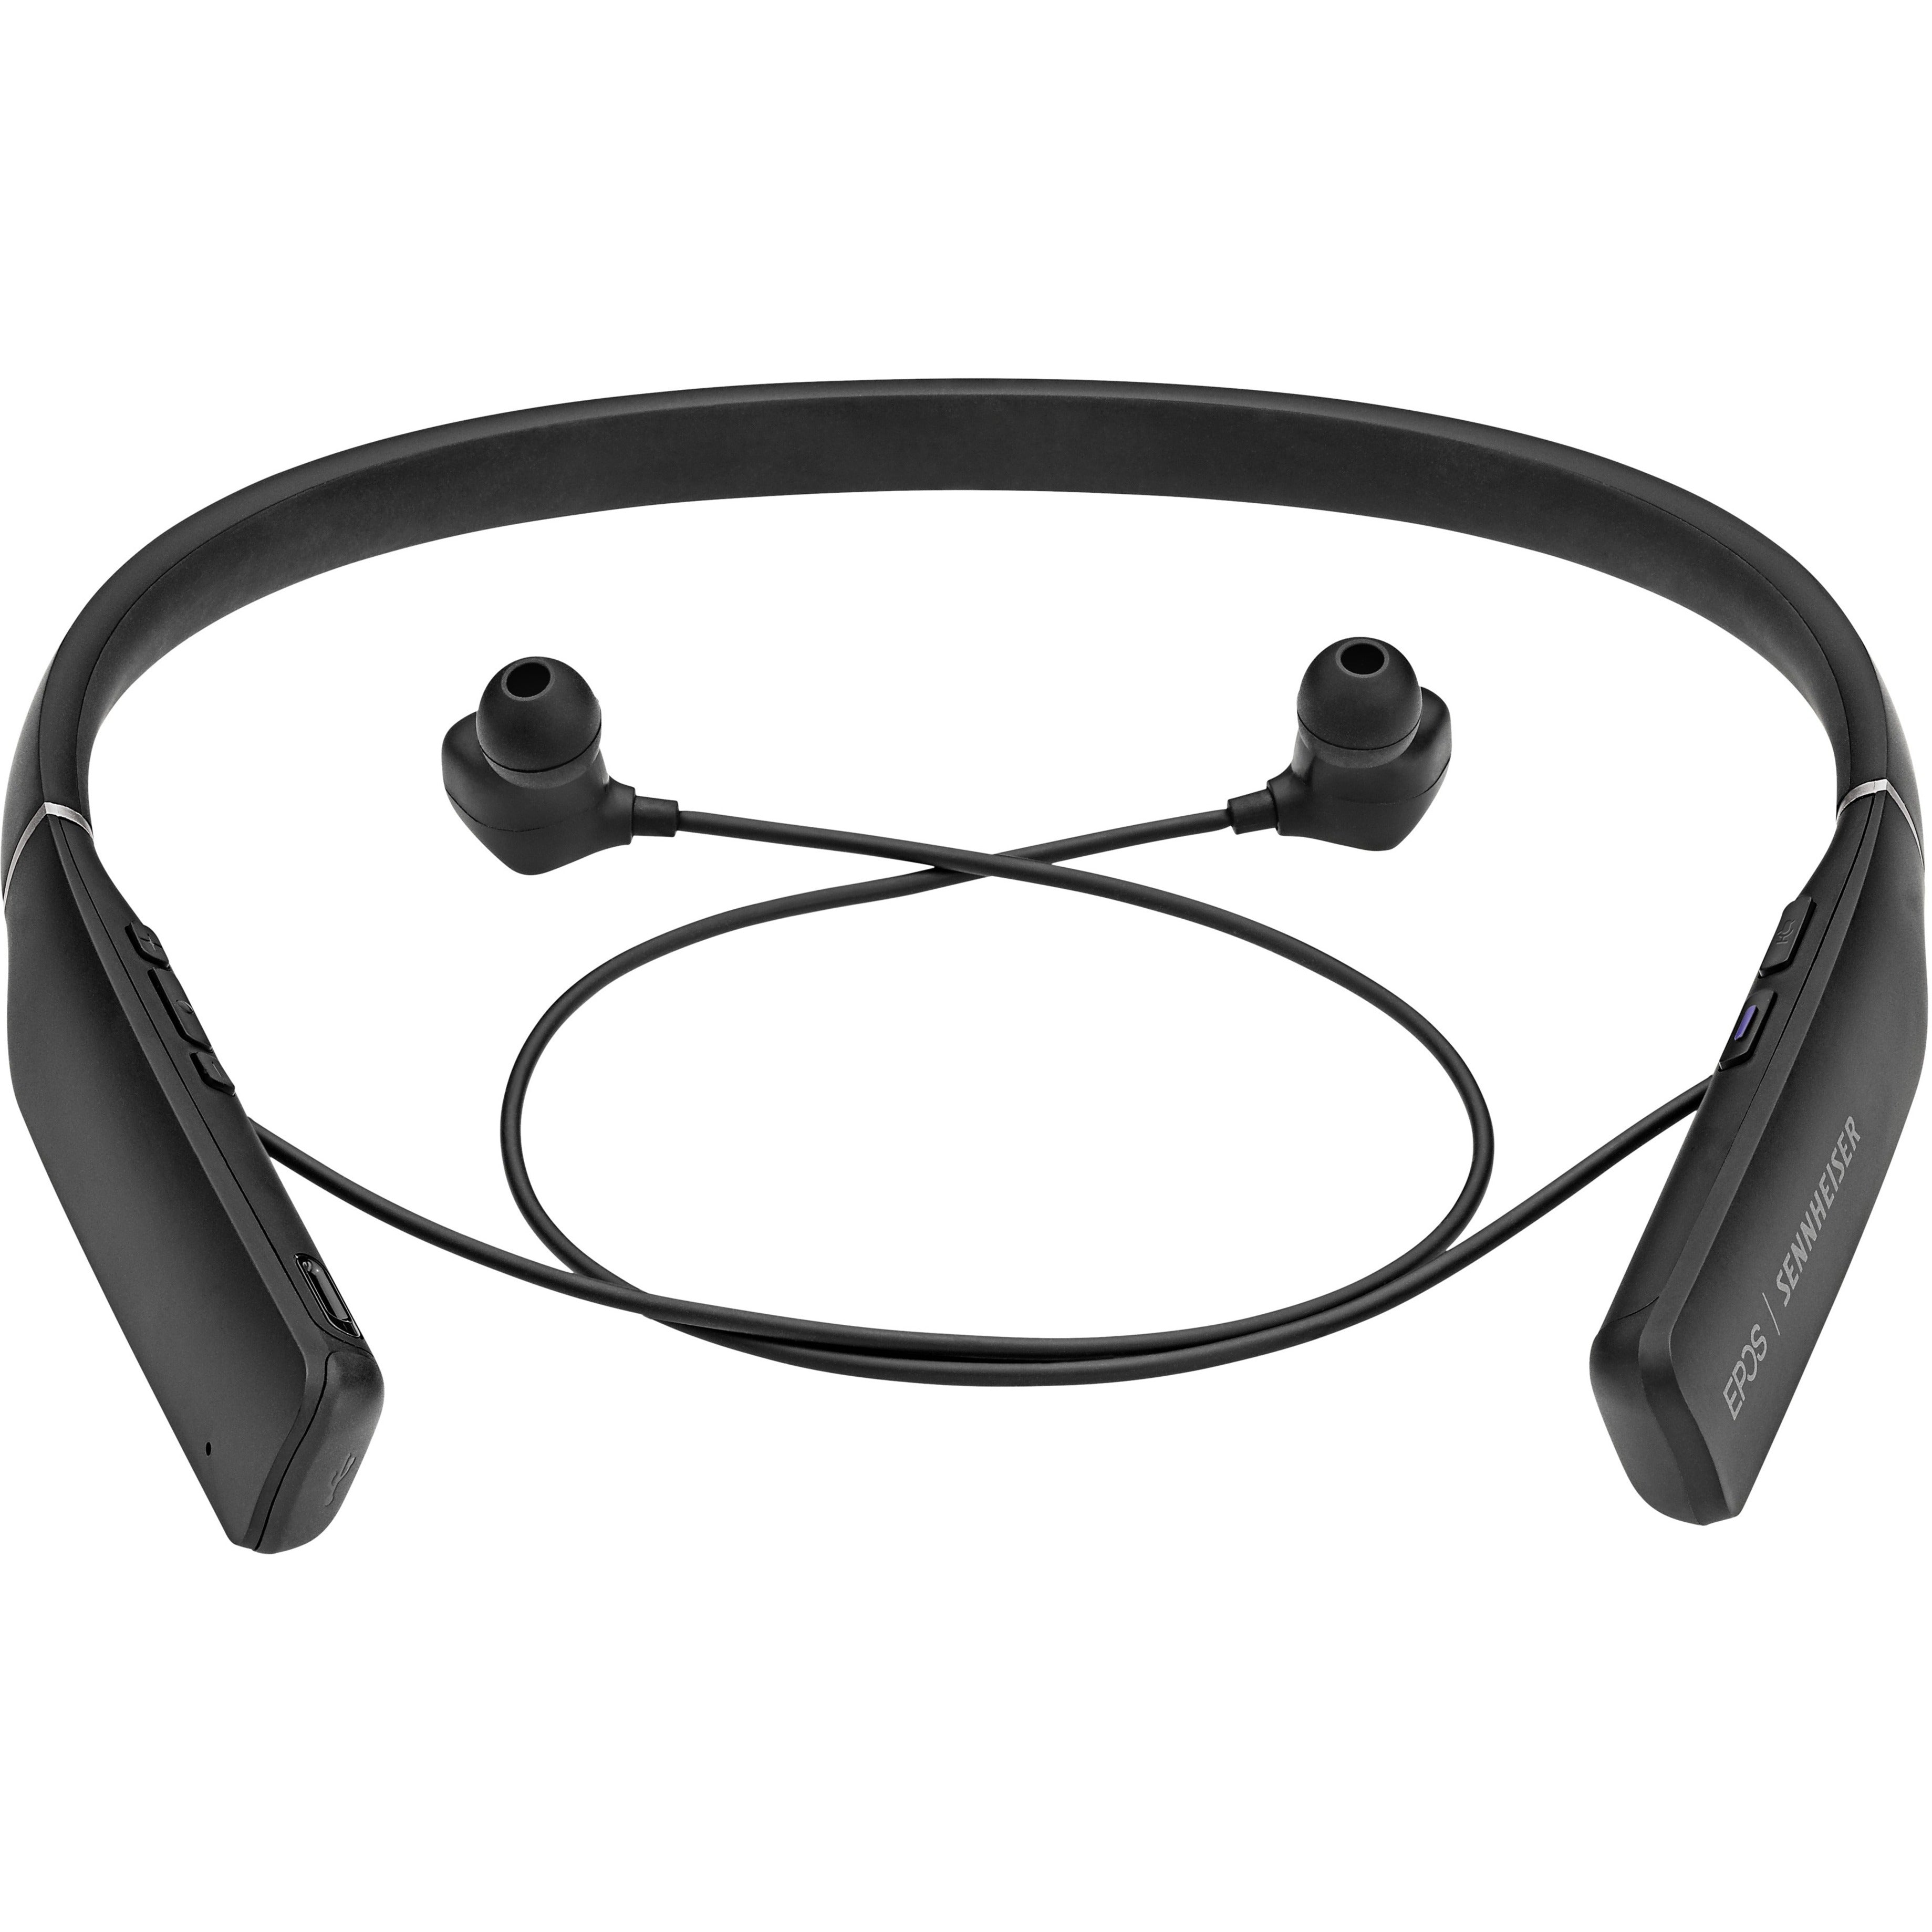 Marca: EPOS | SENNHEISER 1000205 ADAPT 460T Earset Auriculares inalámbricos estéreo Bluetooth con tecnología MEMS micrófono con cancelación de ruido